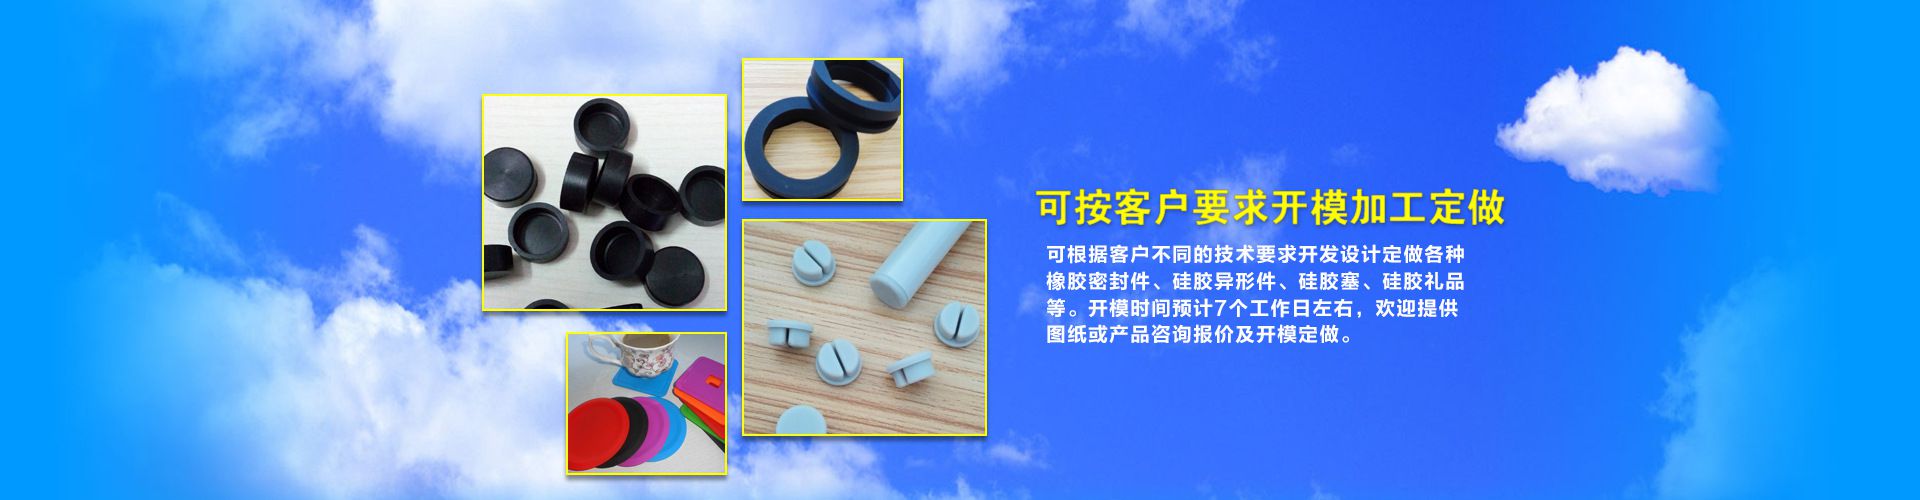 深圳市裕丰硅橡胶制品有限公司